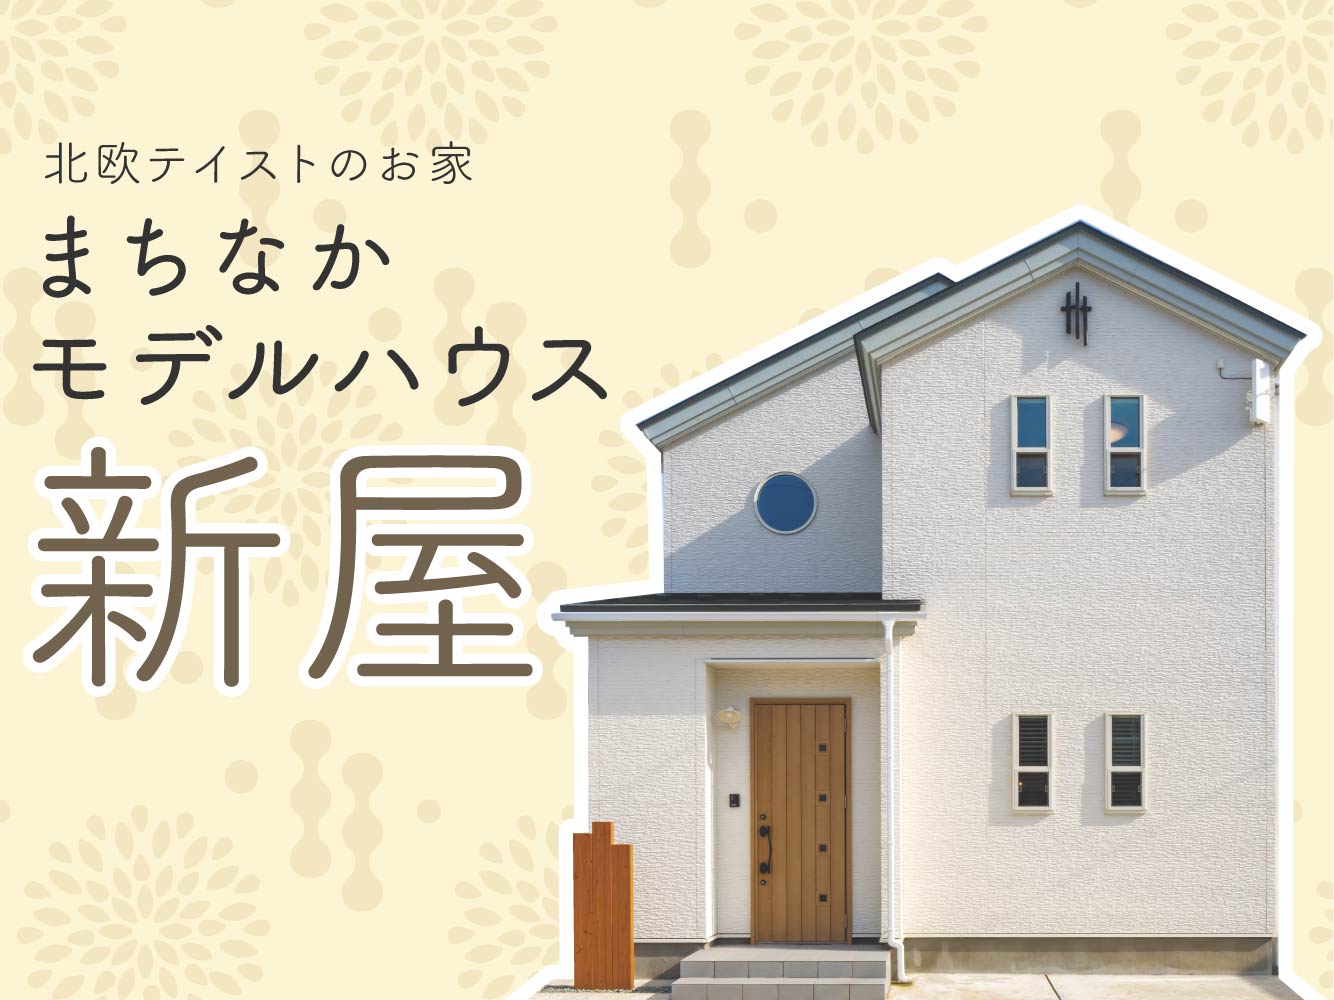 【秋田市新屋】北欧テイストのお家『まちなかモデルハウス新屋』好評公開中